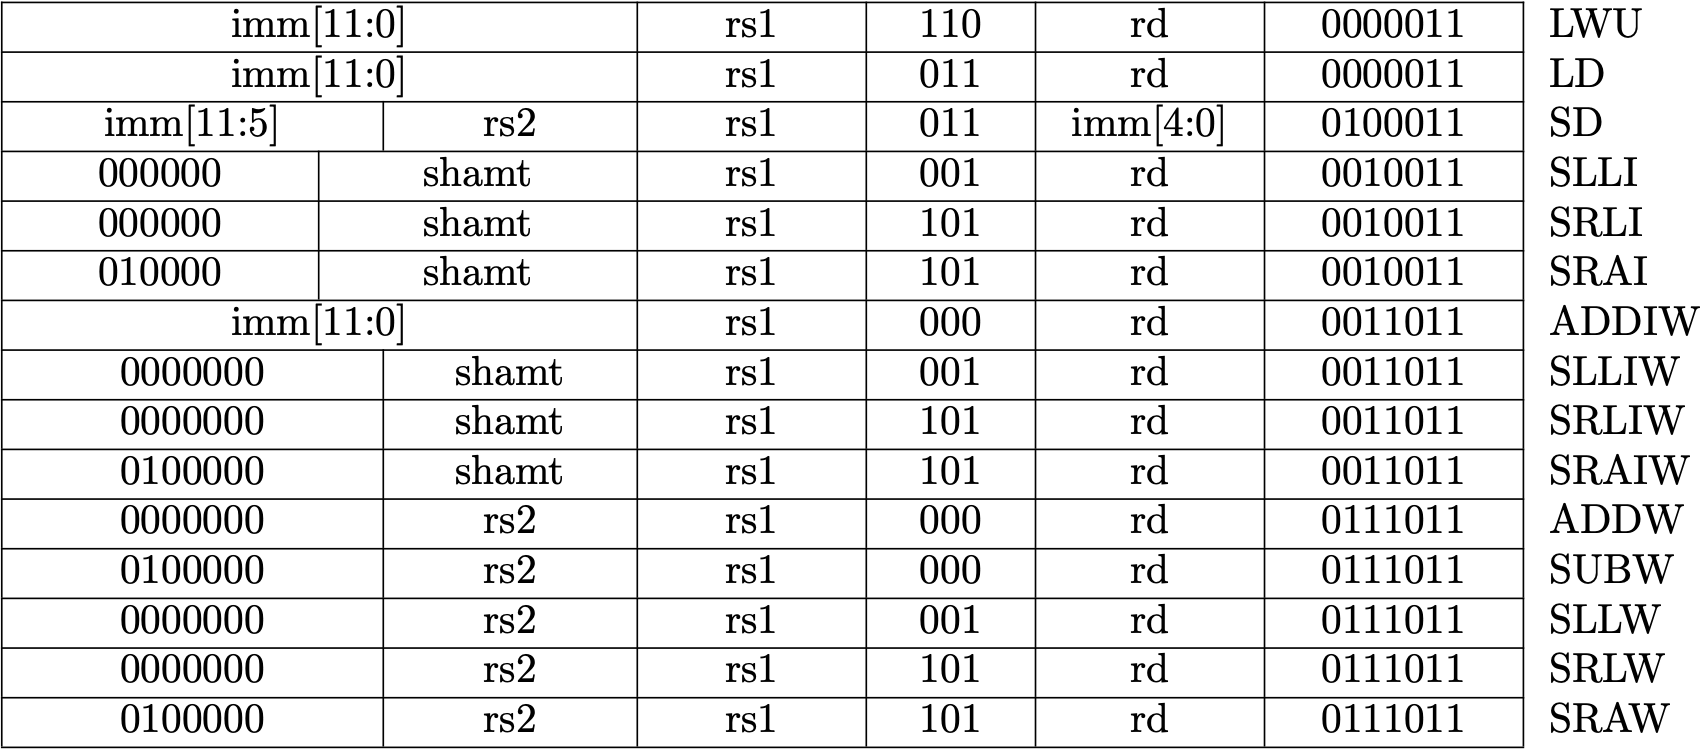 Fig 1.2 RV64I Base Instruction Set (Source: RV64I Base Instruction Set table in Volume I: Unprivileged ISA)